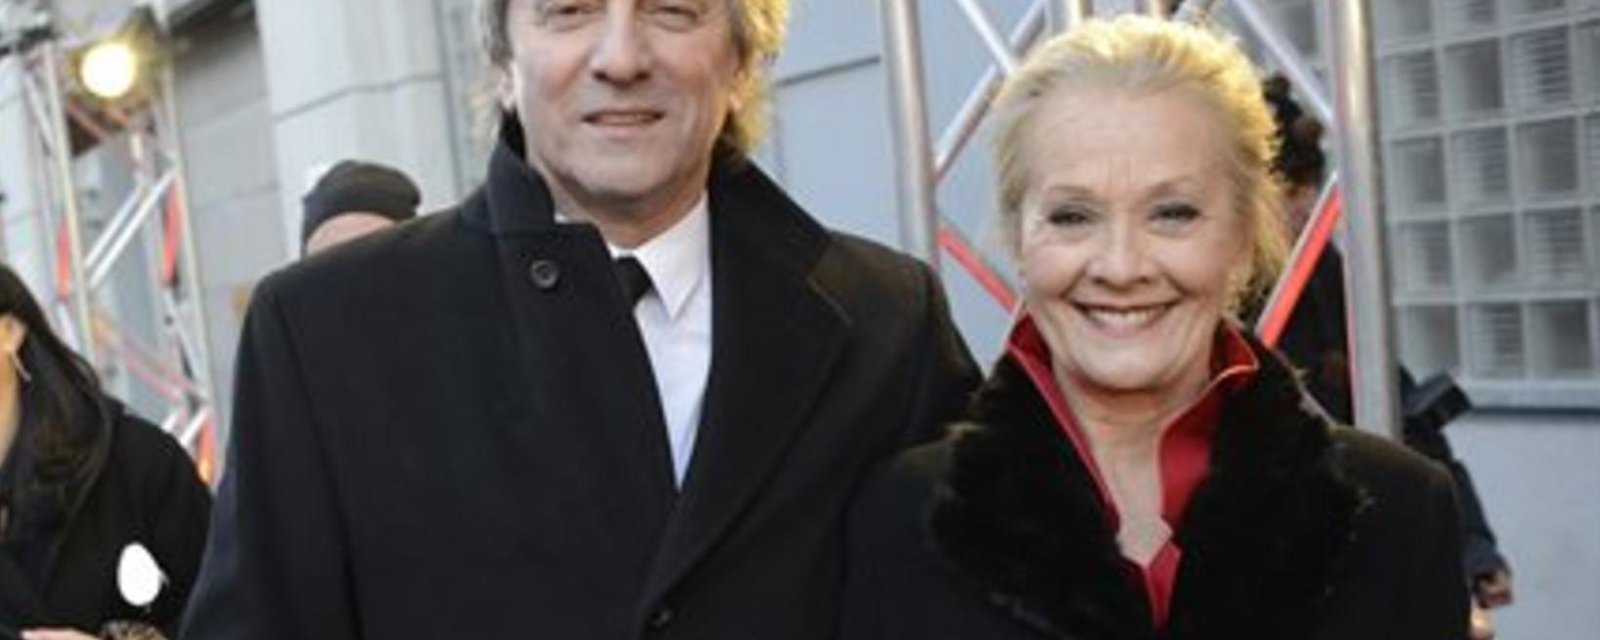 Grande nouvelle pour l'acteur Michel Côté et sa conjointe...